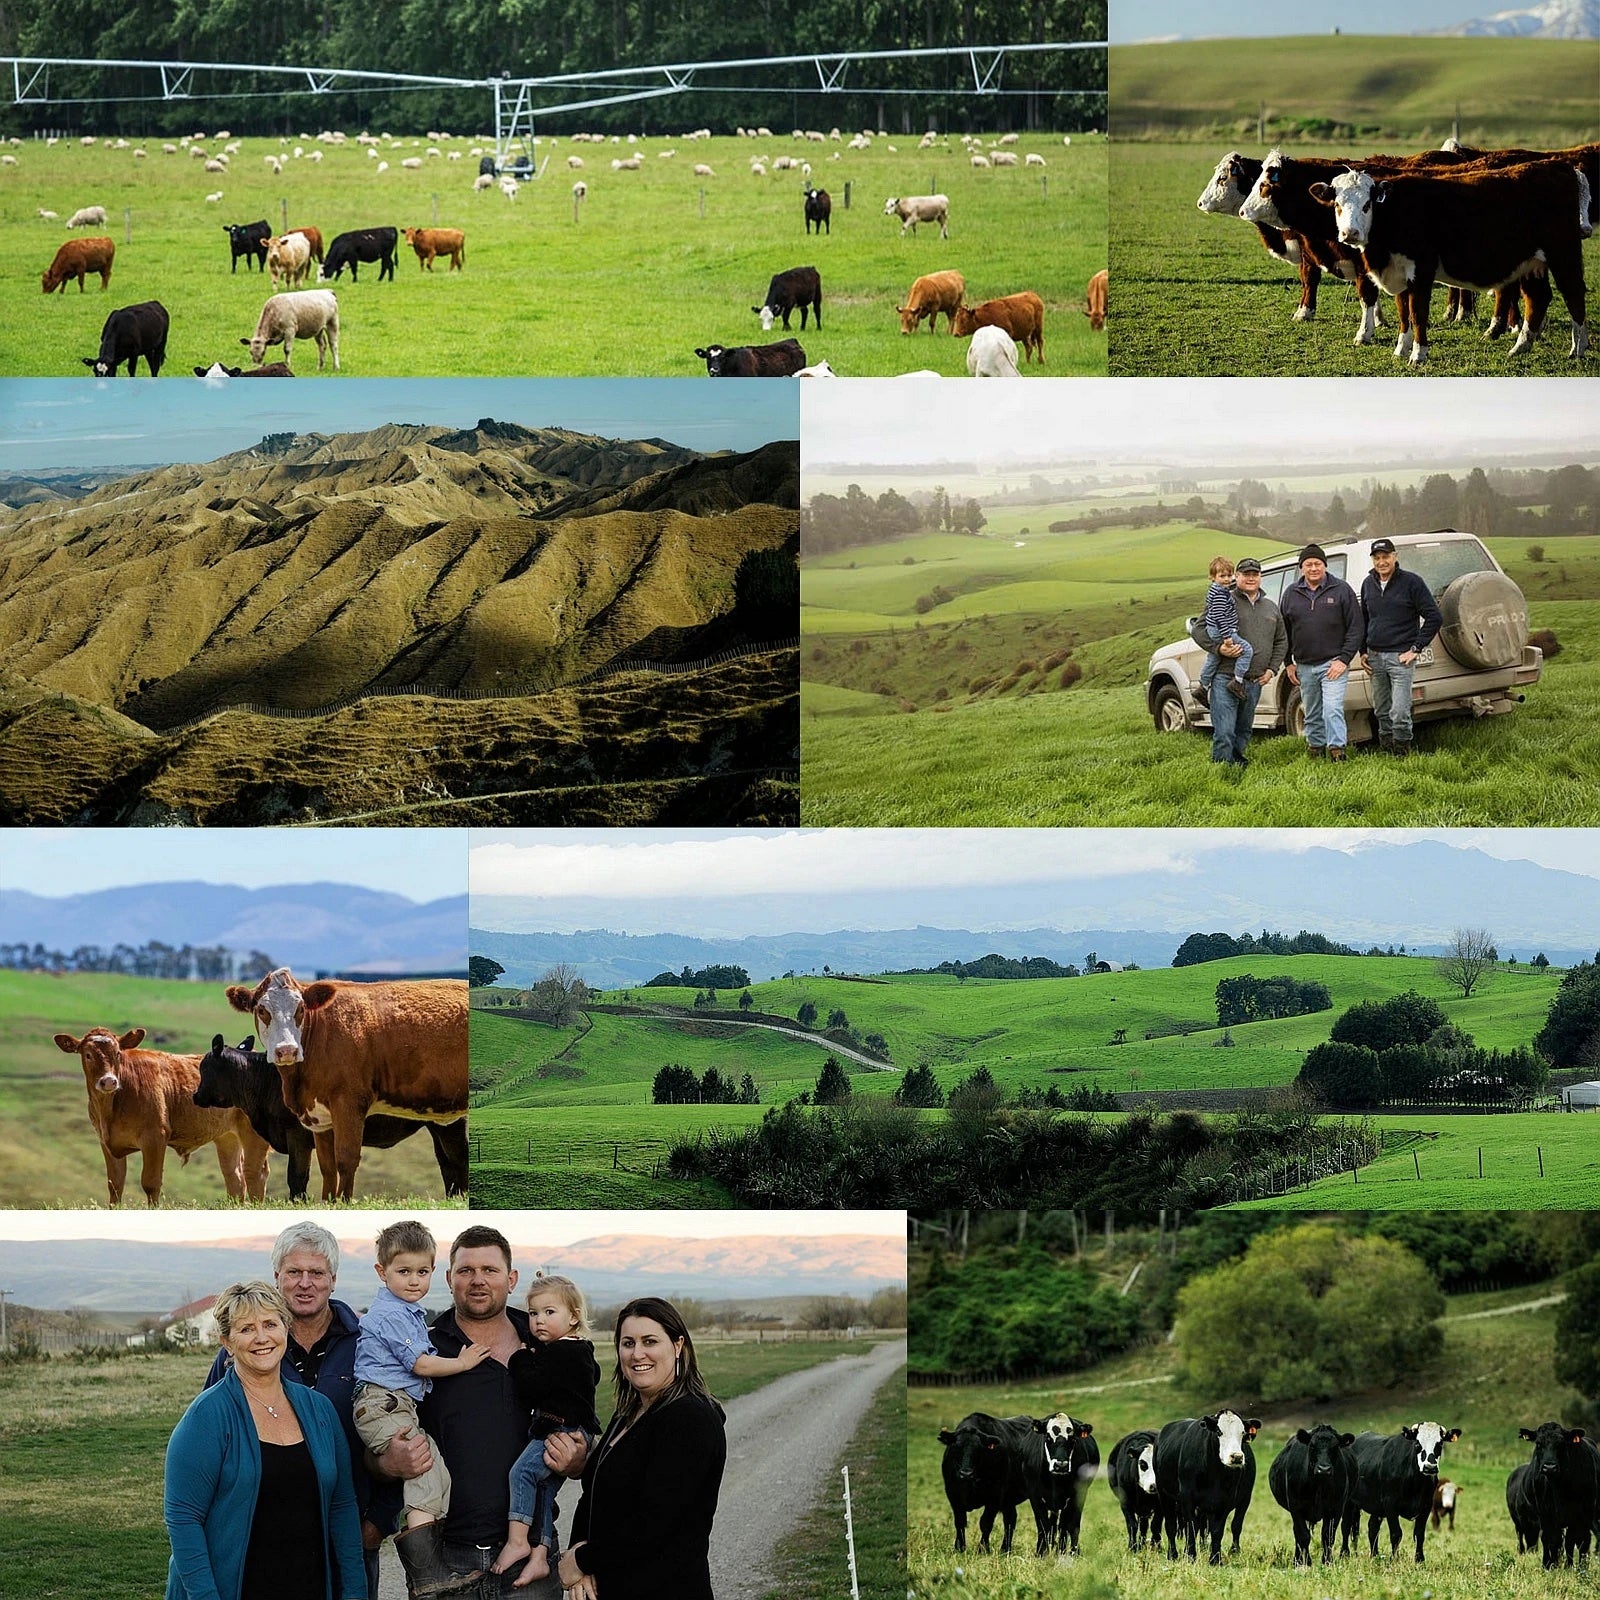 グラスフェッドビーフ 牛肉 ヒレ ステーキ ニュージーランド産 牧草牛 (200g) ホライズンファームズ